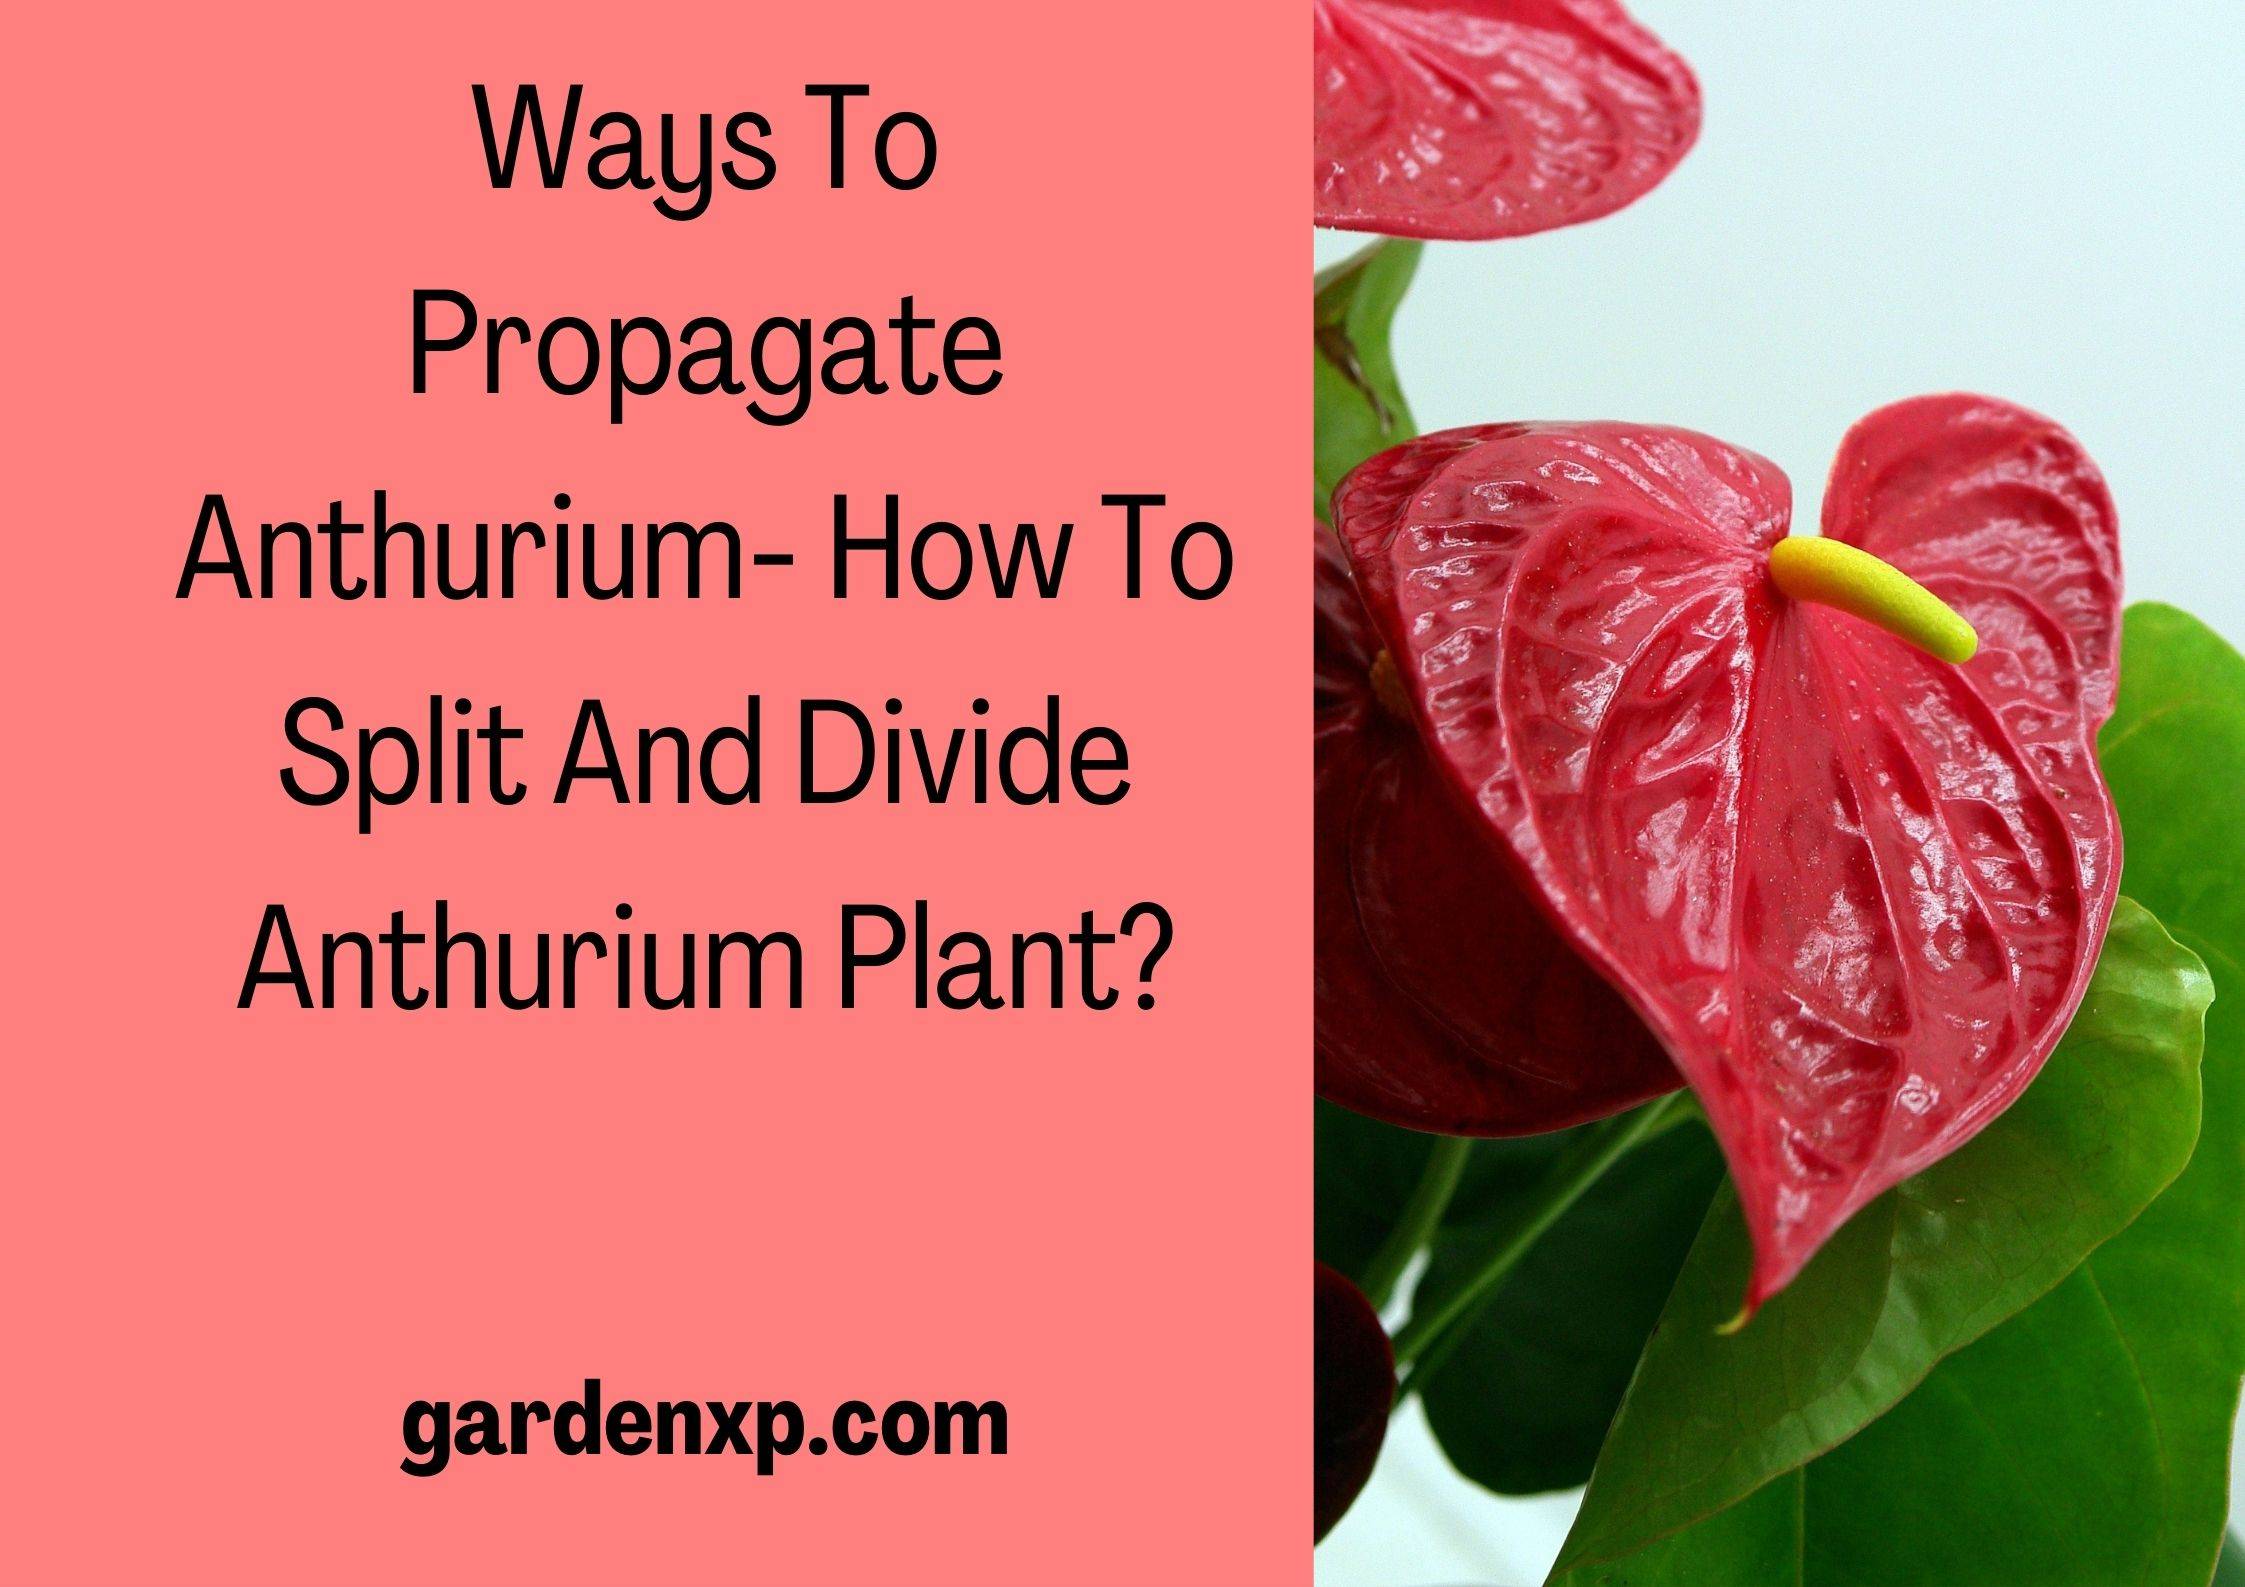 Anthurium Propagation - How to Split and Divide Anthurium Plant?